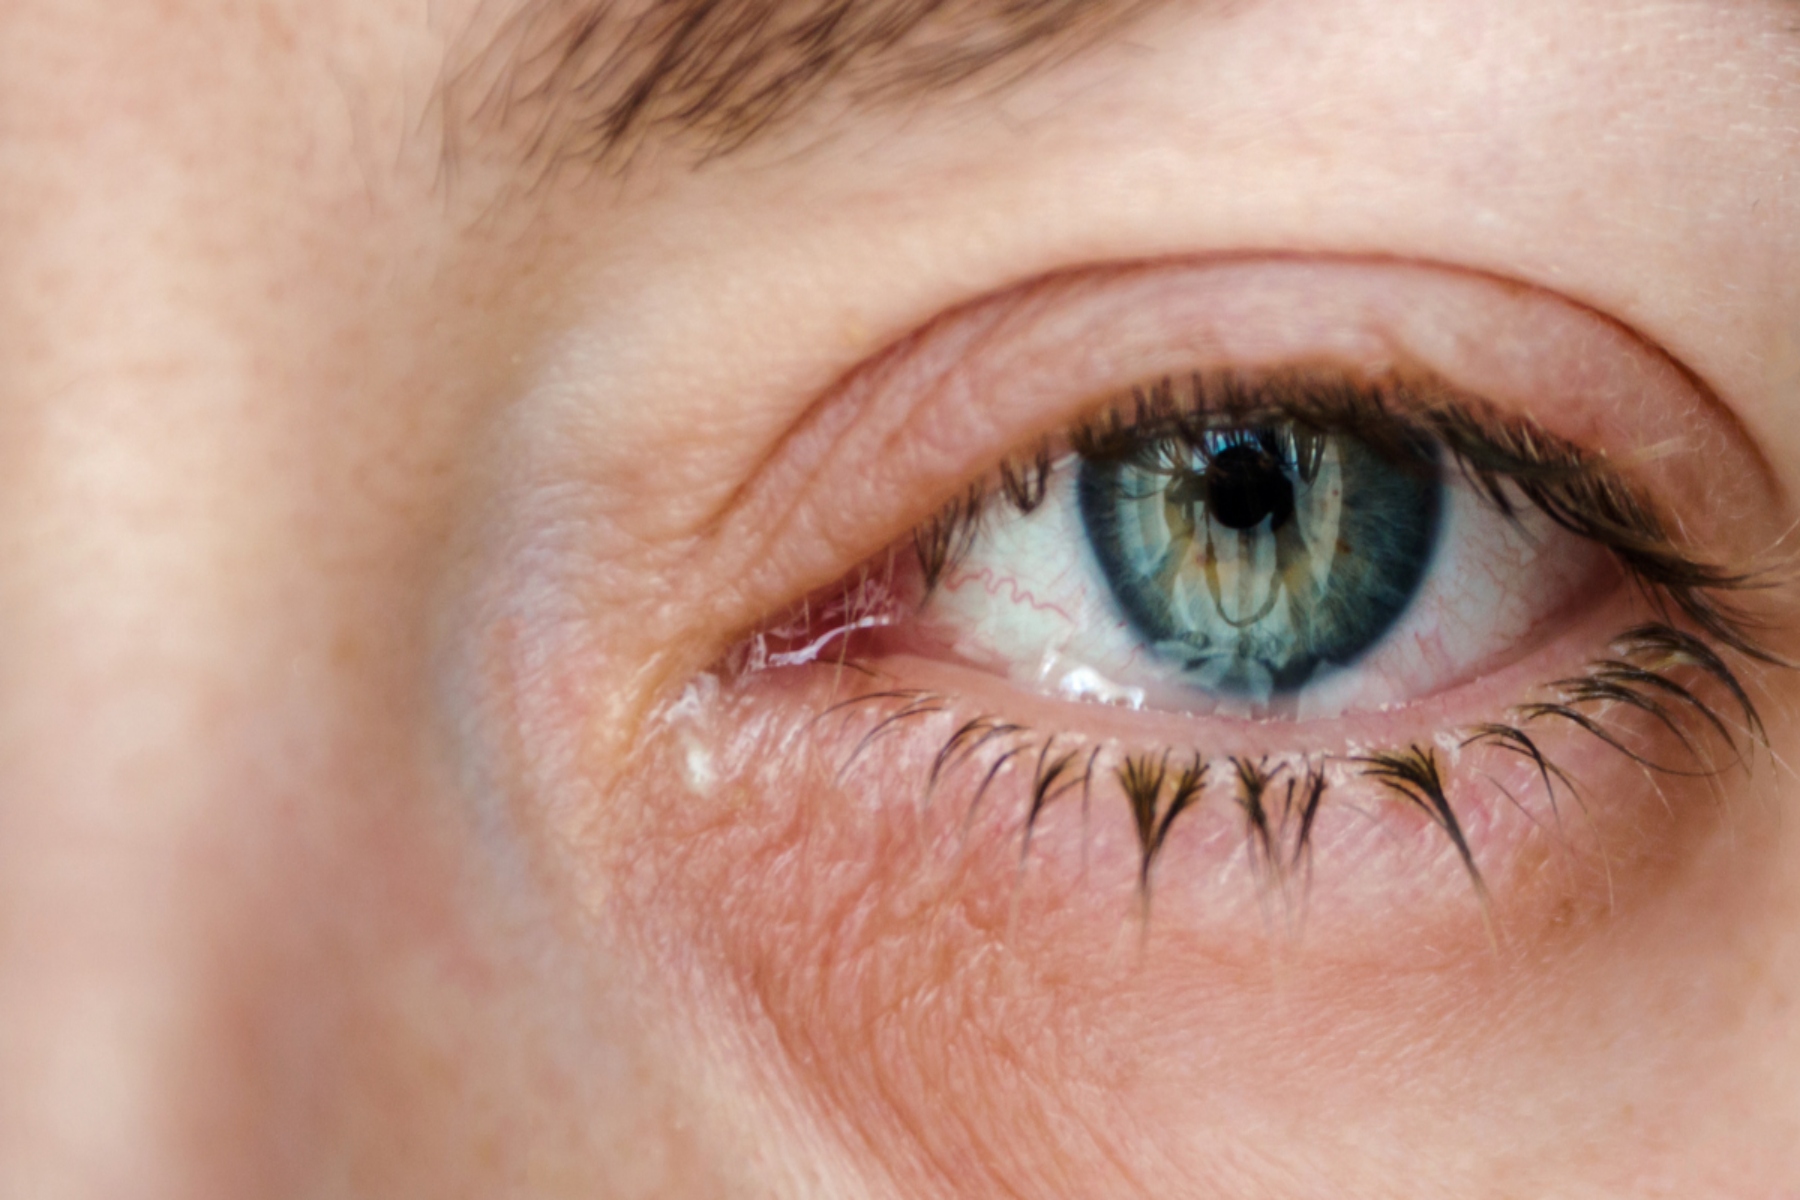 Ηλικιακή Εκφύλιση της Ωχράς Κηλίδας: Δύο ξεχωριστές οφθαλμικές παθήσεις μπορεί να συμβάλλουν στην κοινή τυφλωτική πάθηση των ματιών